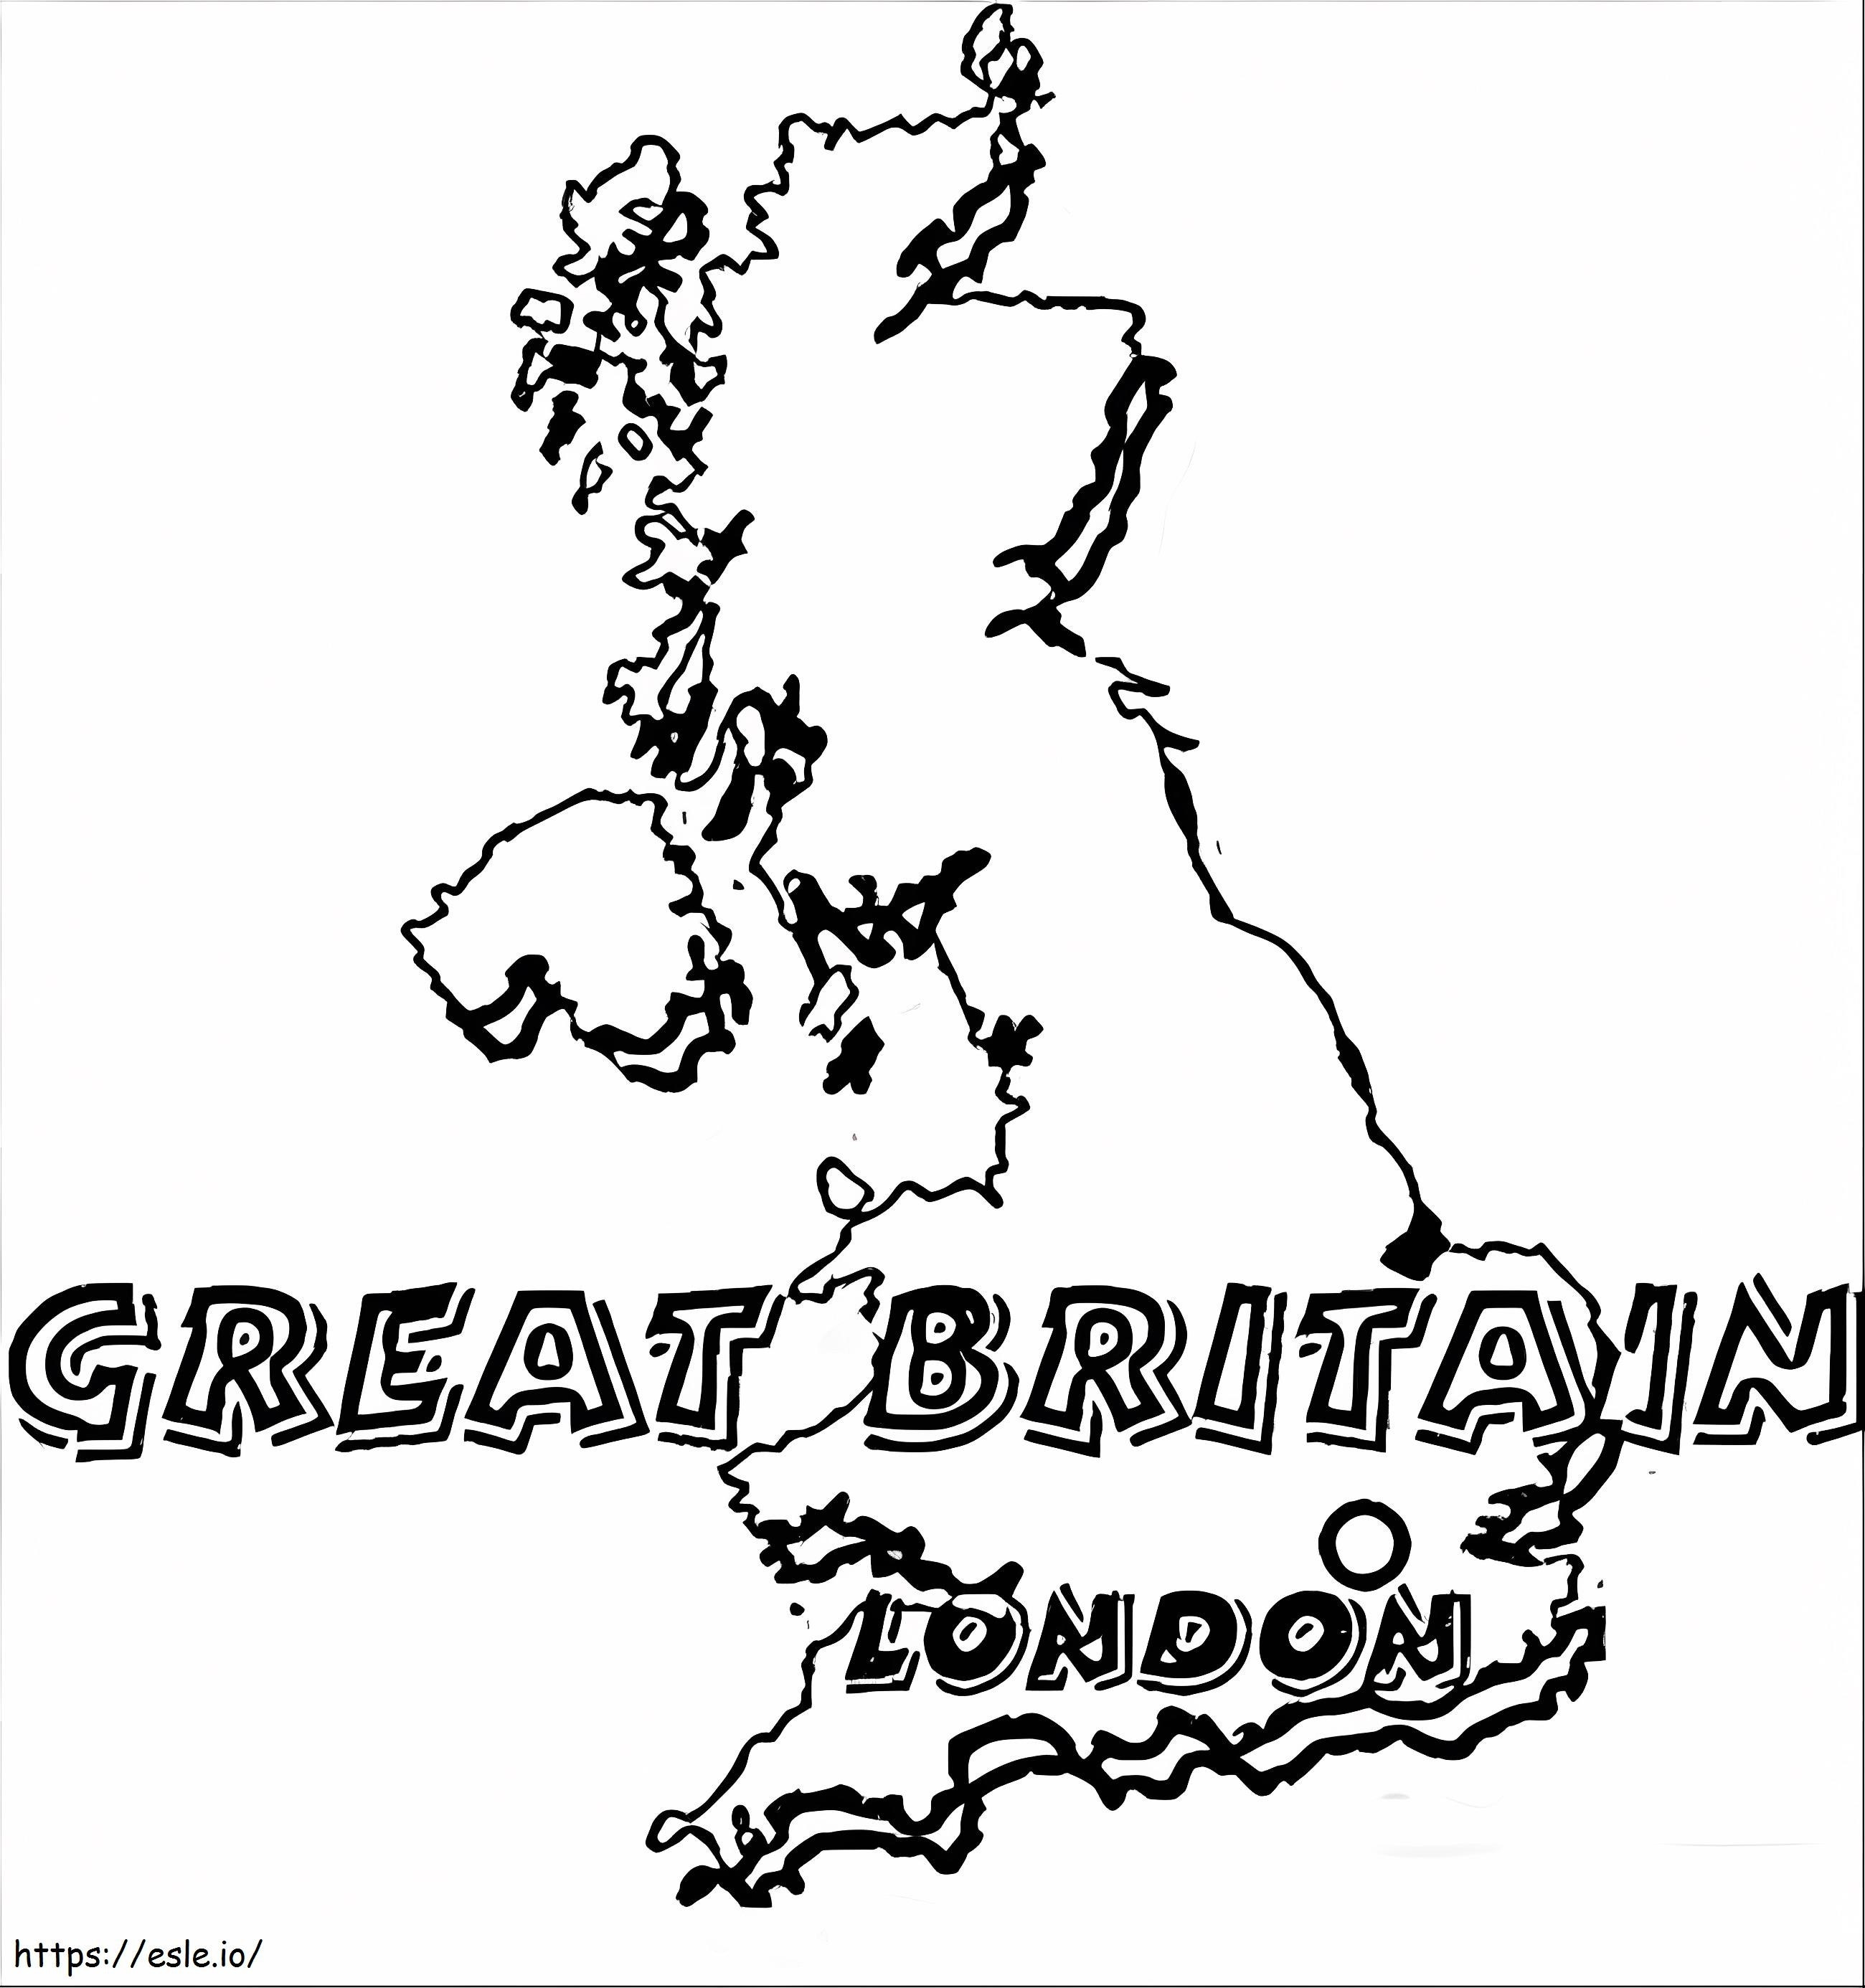 Mapa Wielkiej Brytanii kolorowanka